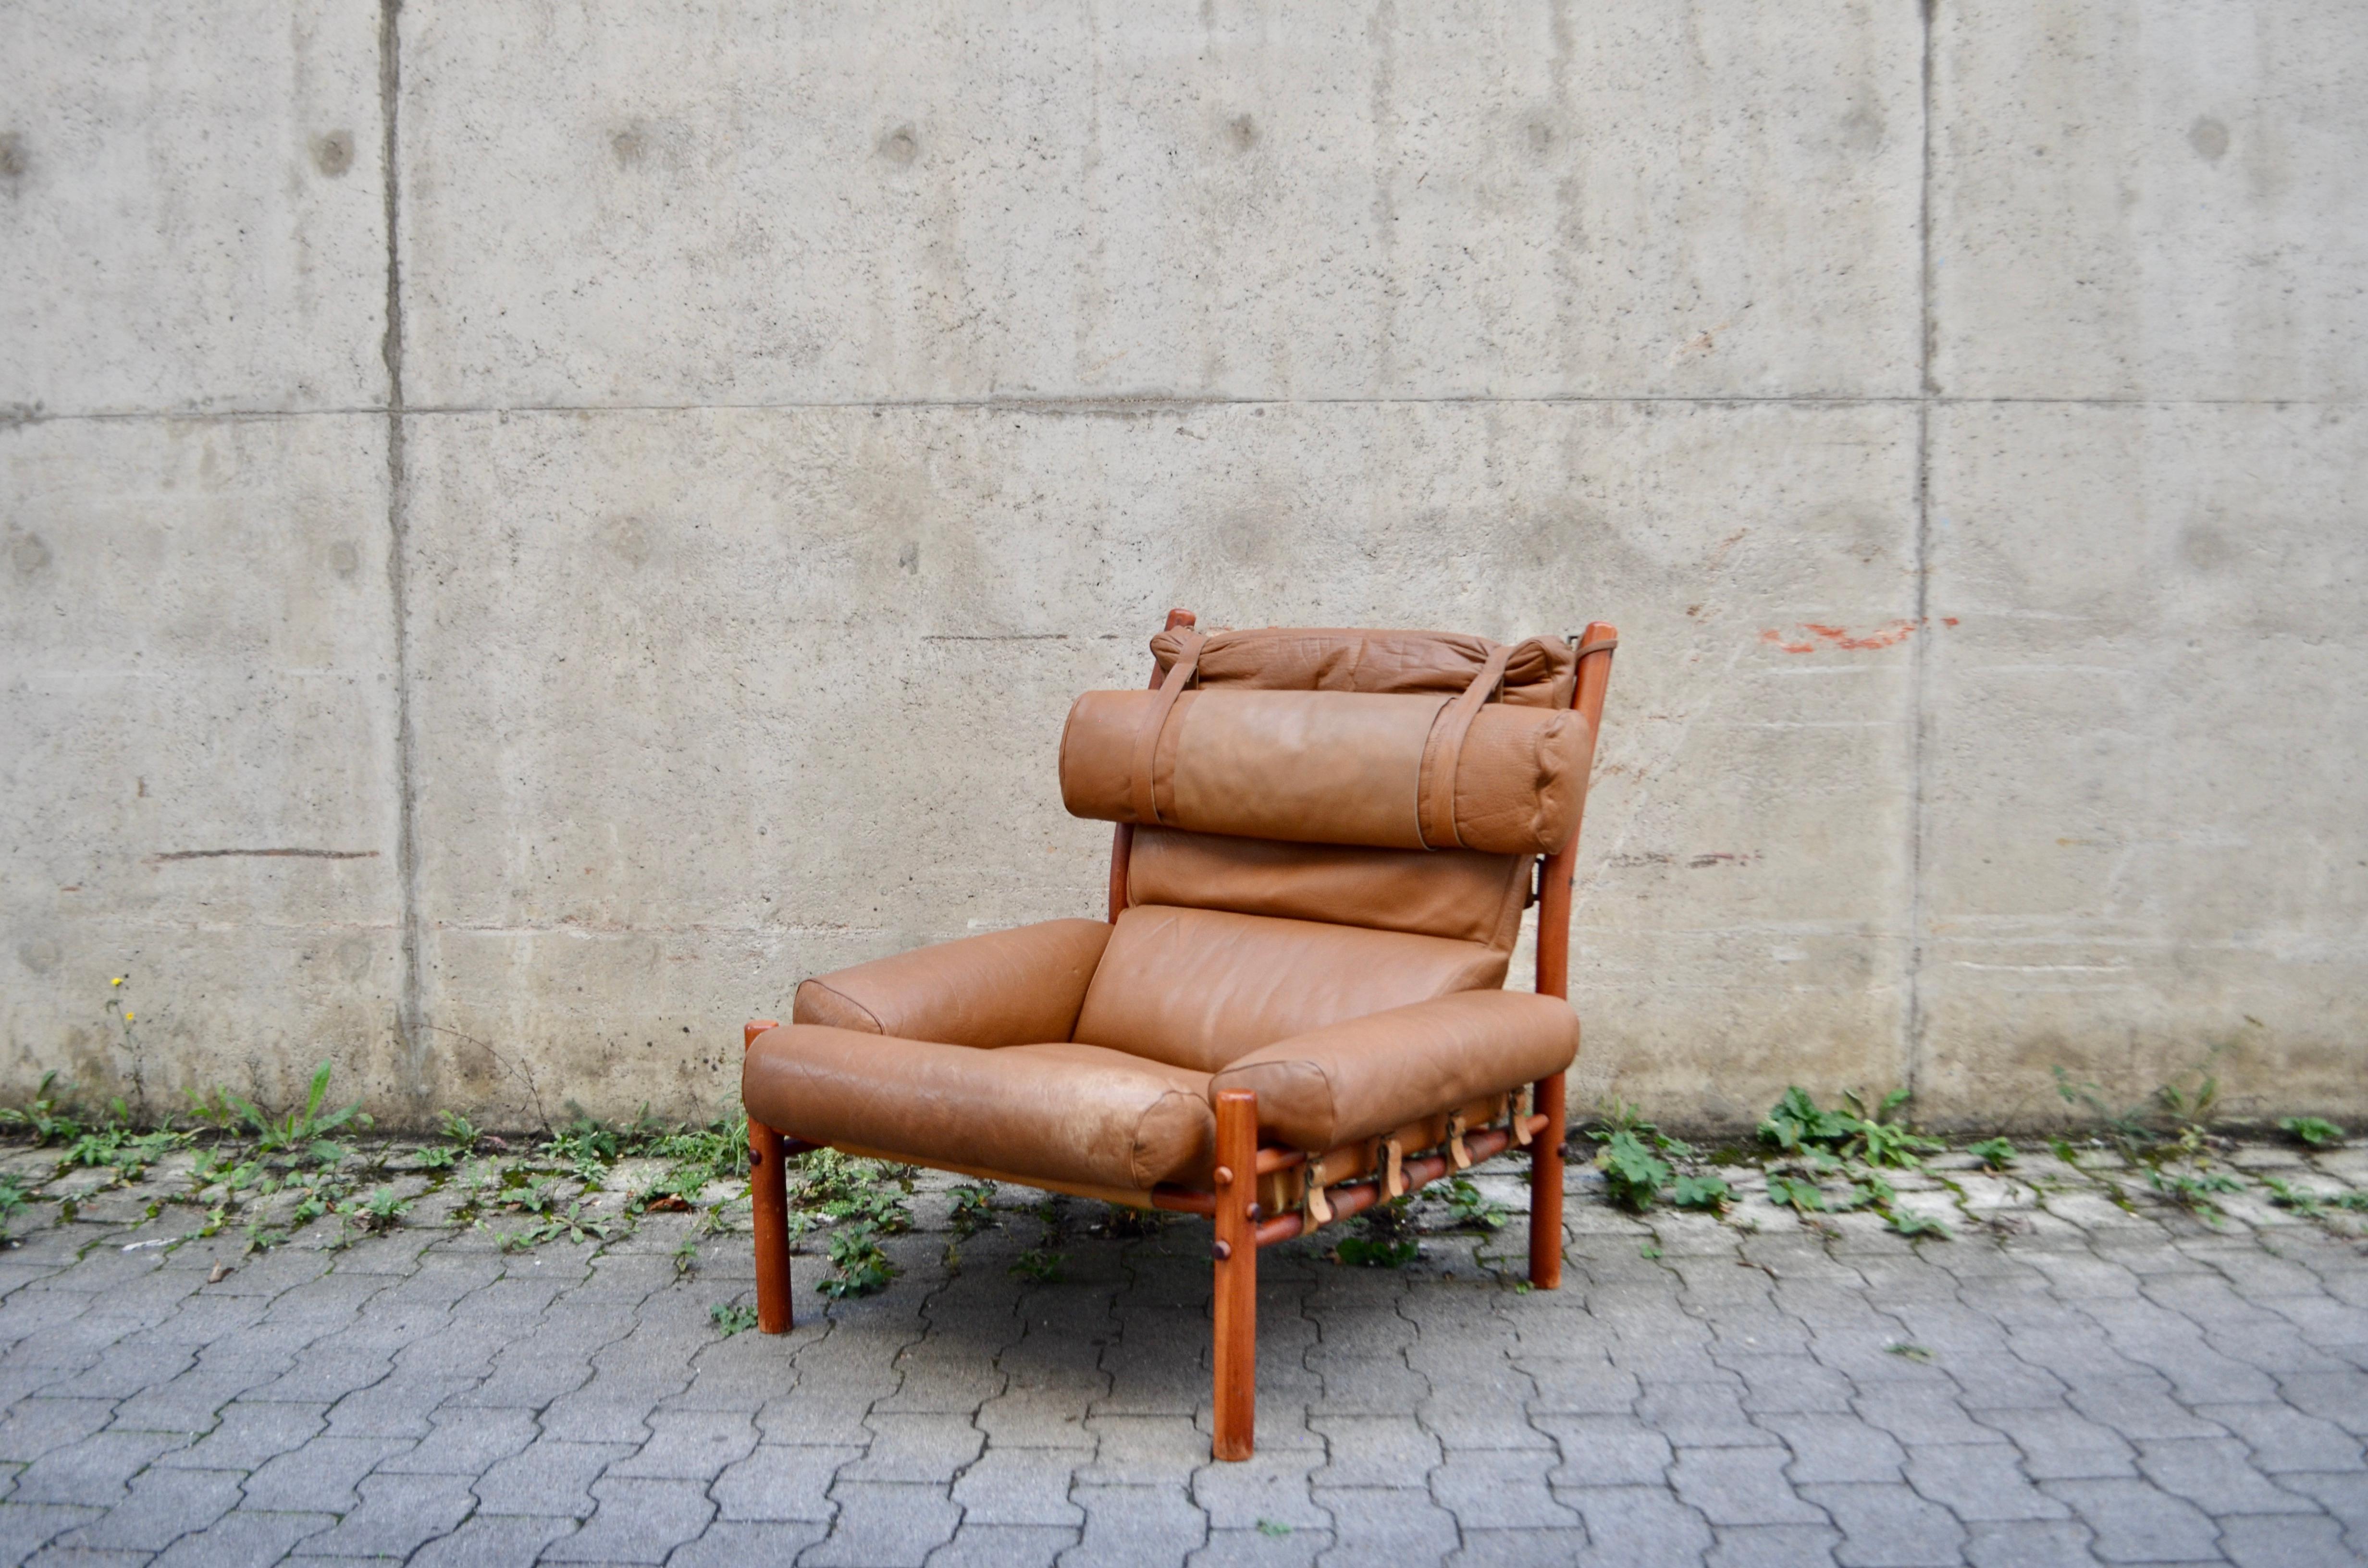 Der Lounge-Sessel Inca aus karamellbraunem Leder wurde von Arne Norell entworfen und von Norell Mobler AB in Schweden hergestellt. 
Er ist aus Buche gefertigt, teakfarben gebeizt und mit braunem Original-Karamellleder gepolstert.
Tolle Lederdetails